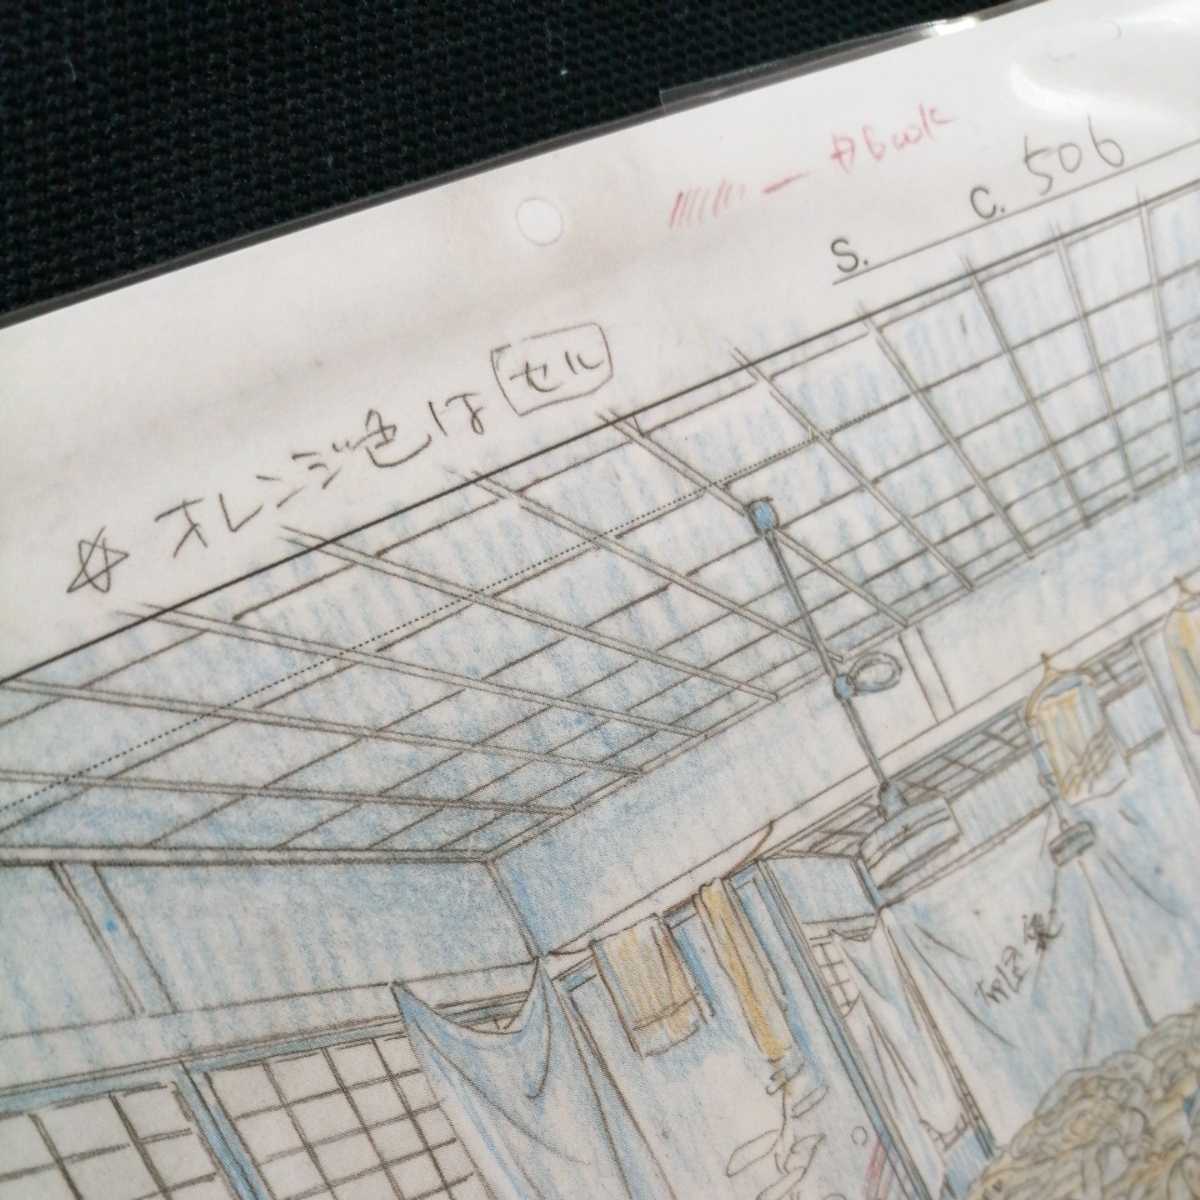  Studio Ghibli тысяч . тысяч .. бог .. расположение порез . осмотр ) Ghibli открытка постер исходная картина цифровая картинка расположение выставка Miyazaki .